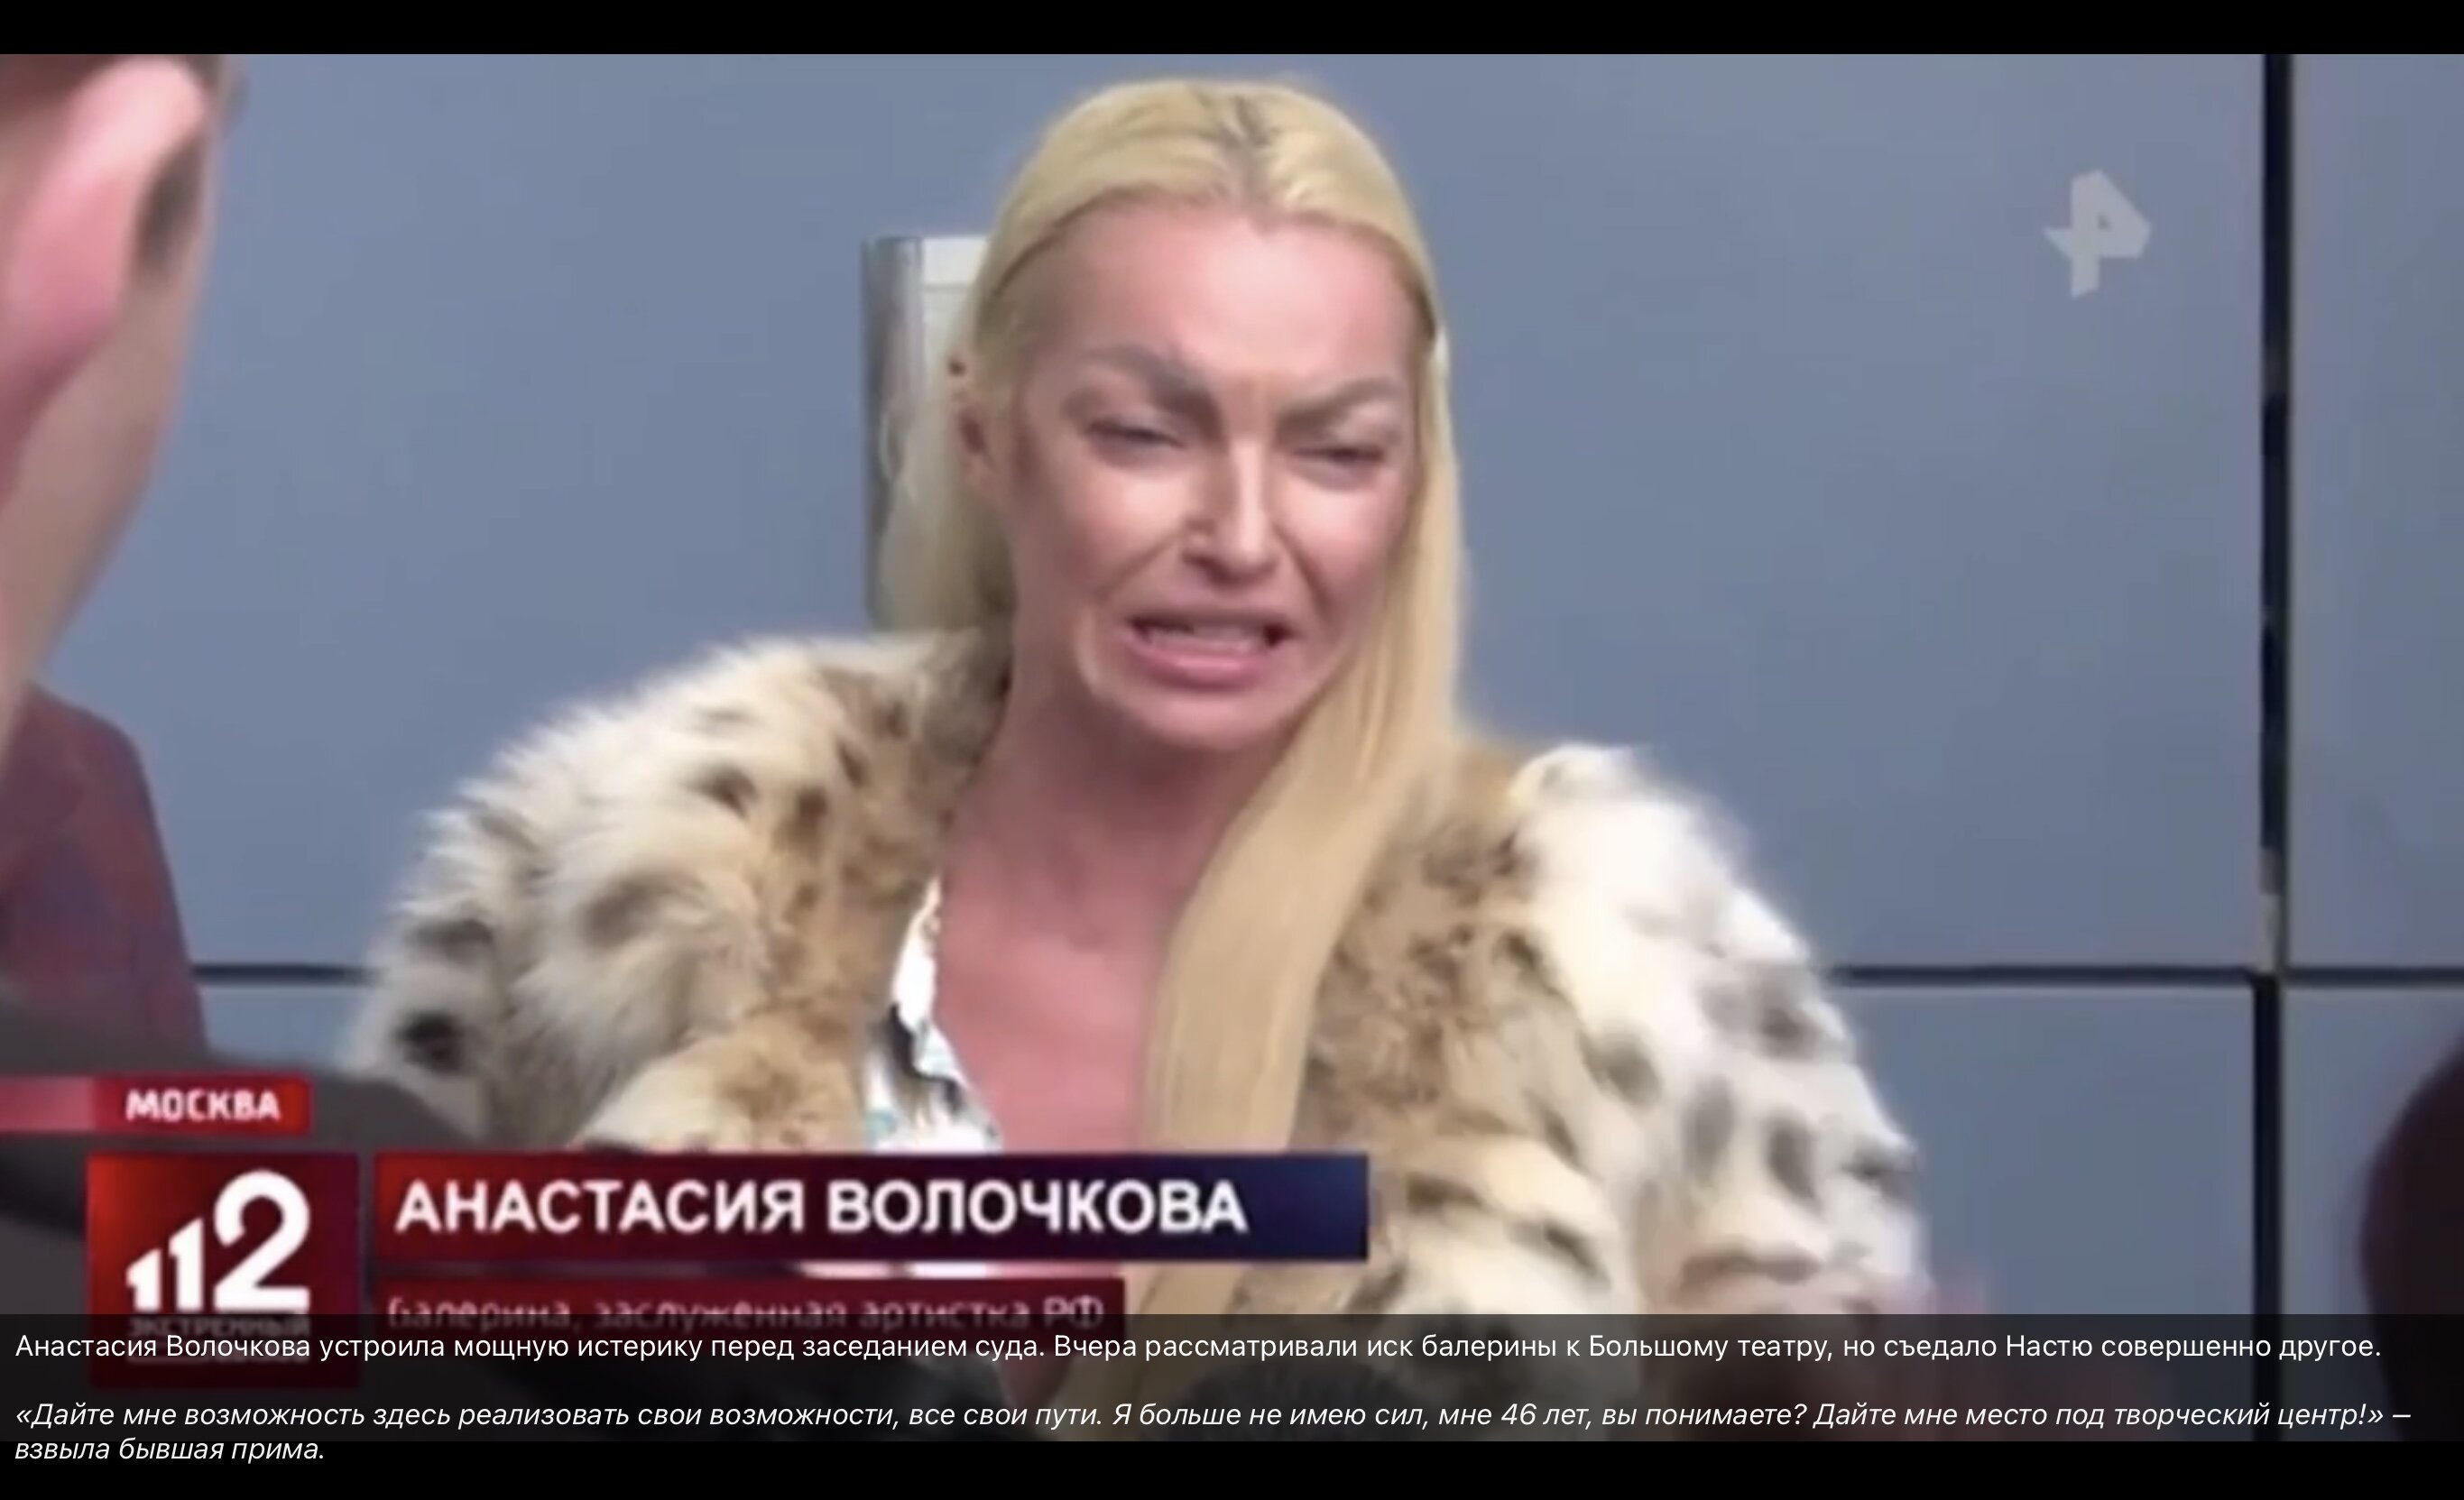 «Опять поддатая?»: Анастасия Волочкова устроила истерику со слезами перед судебным заседанием